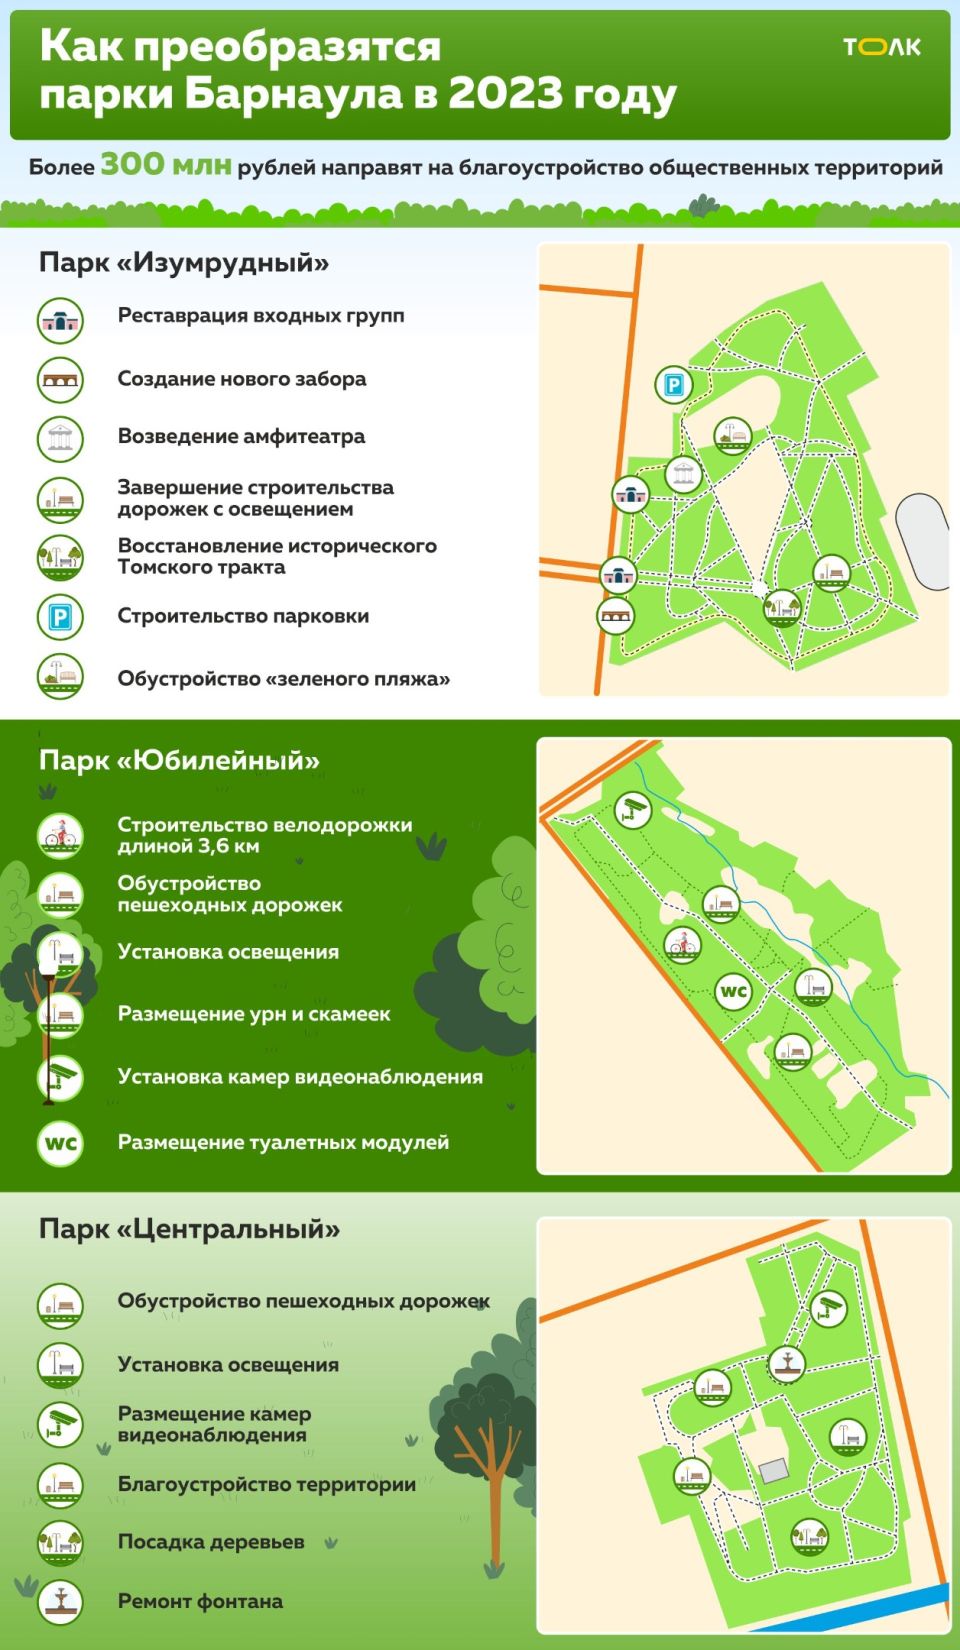 Что планируют сделать в парках Барнаула в 2023 году